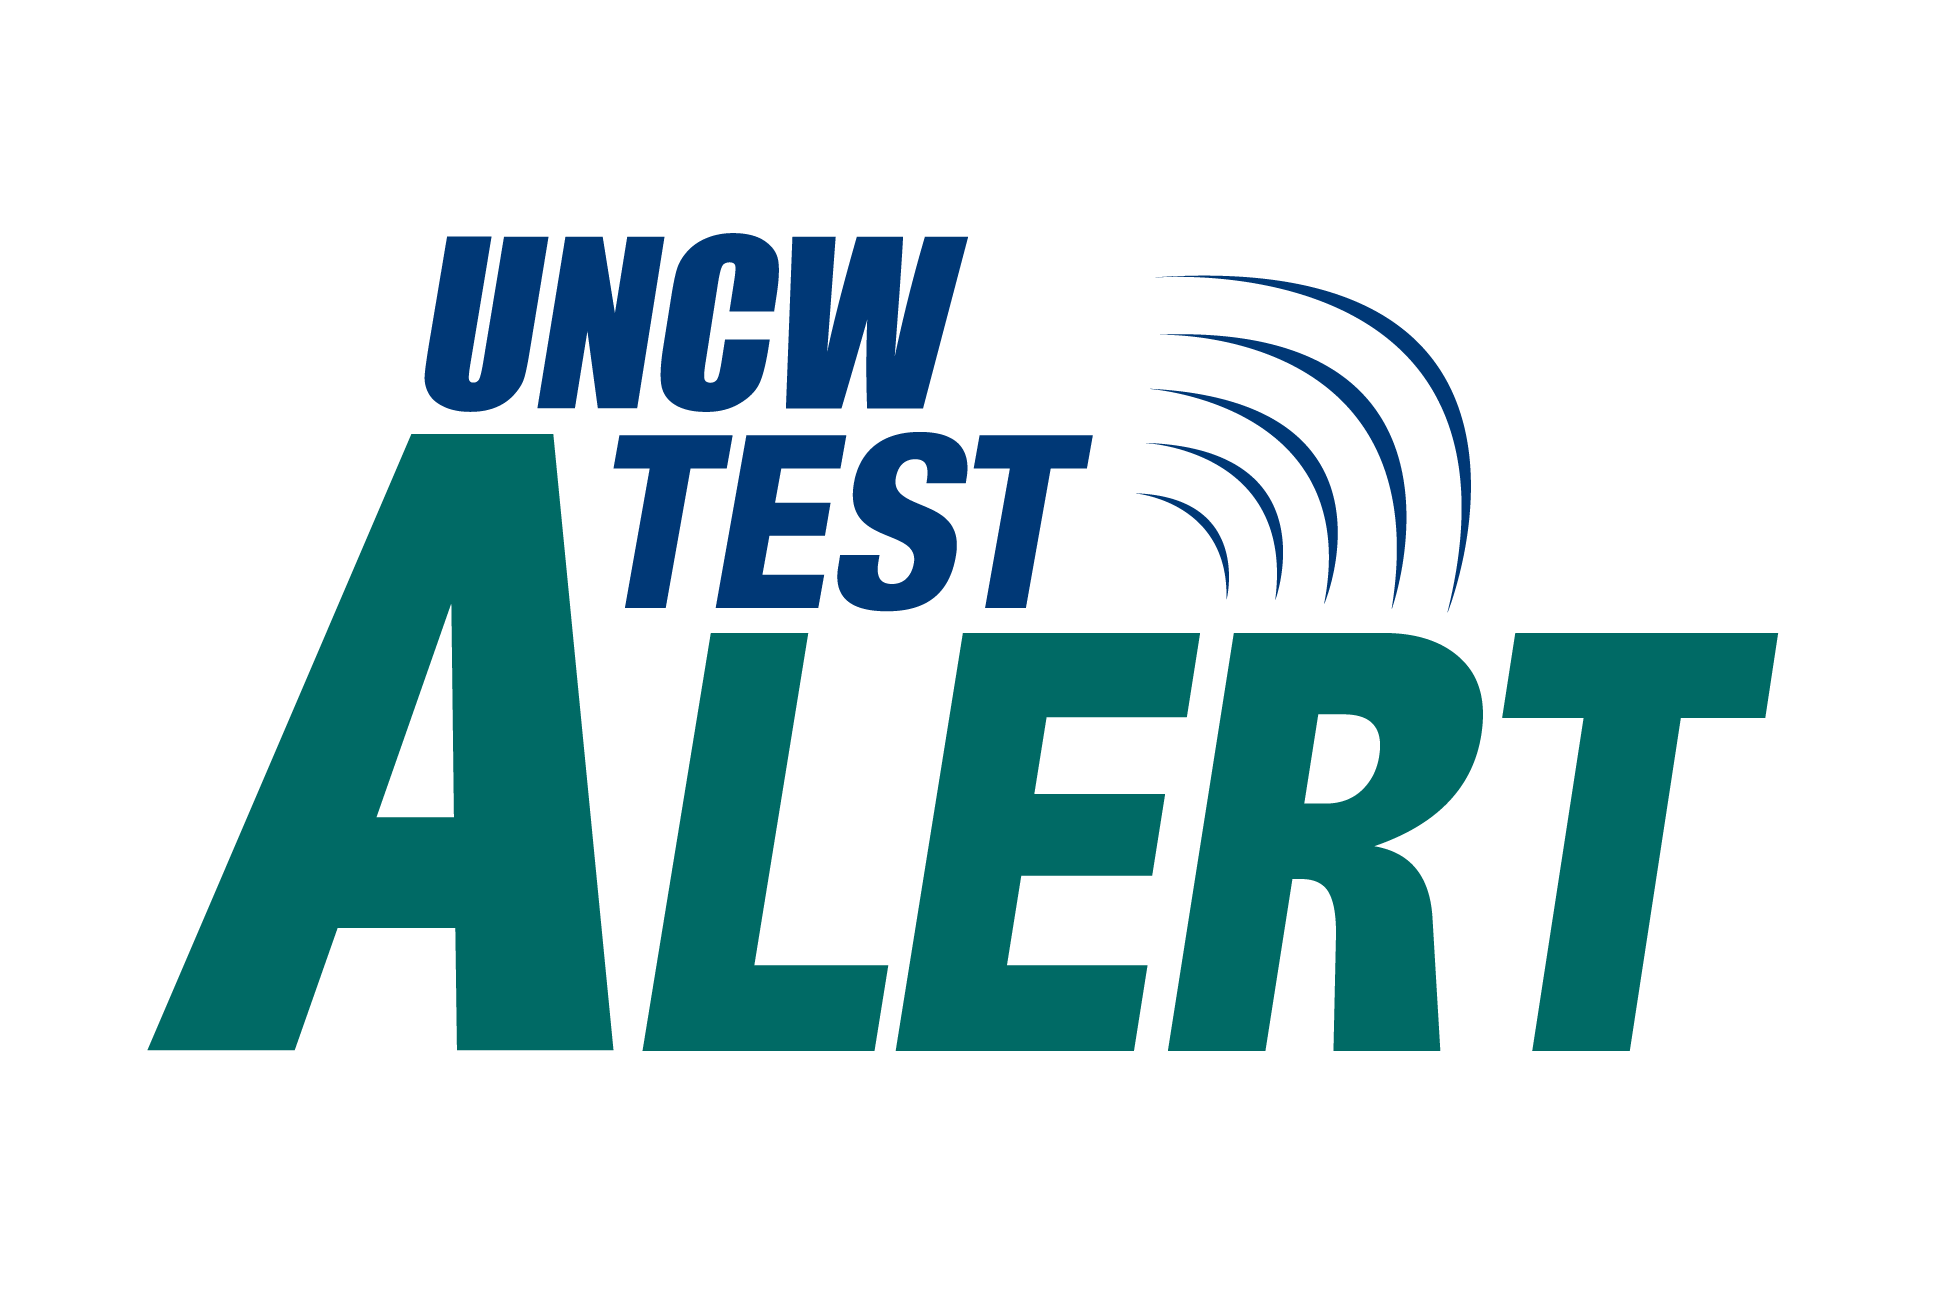 UNCW News